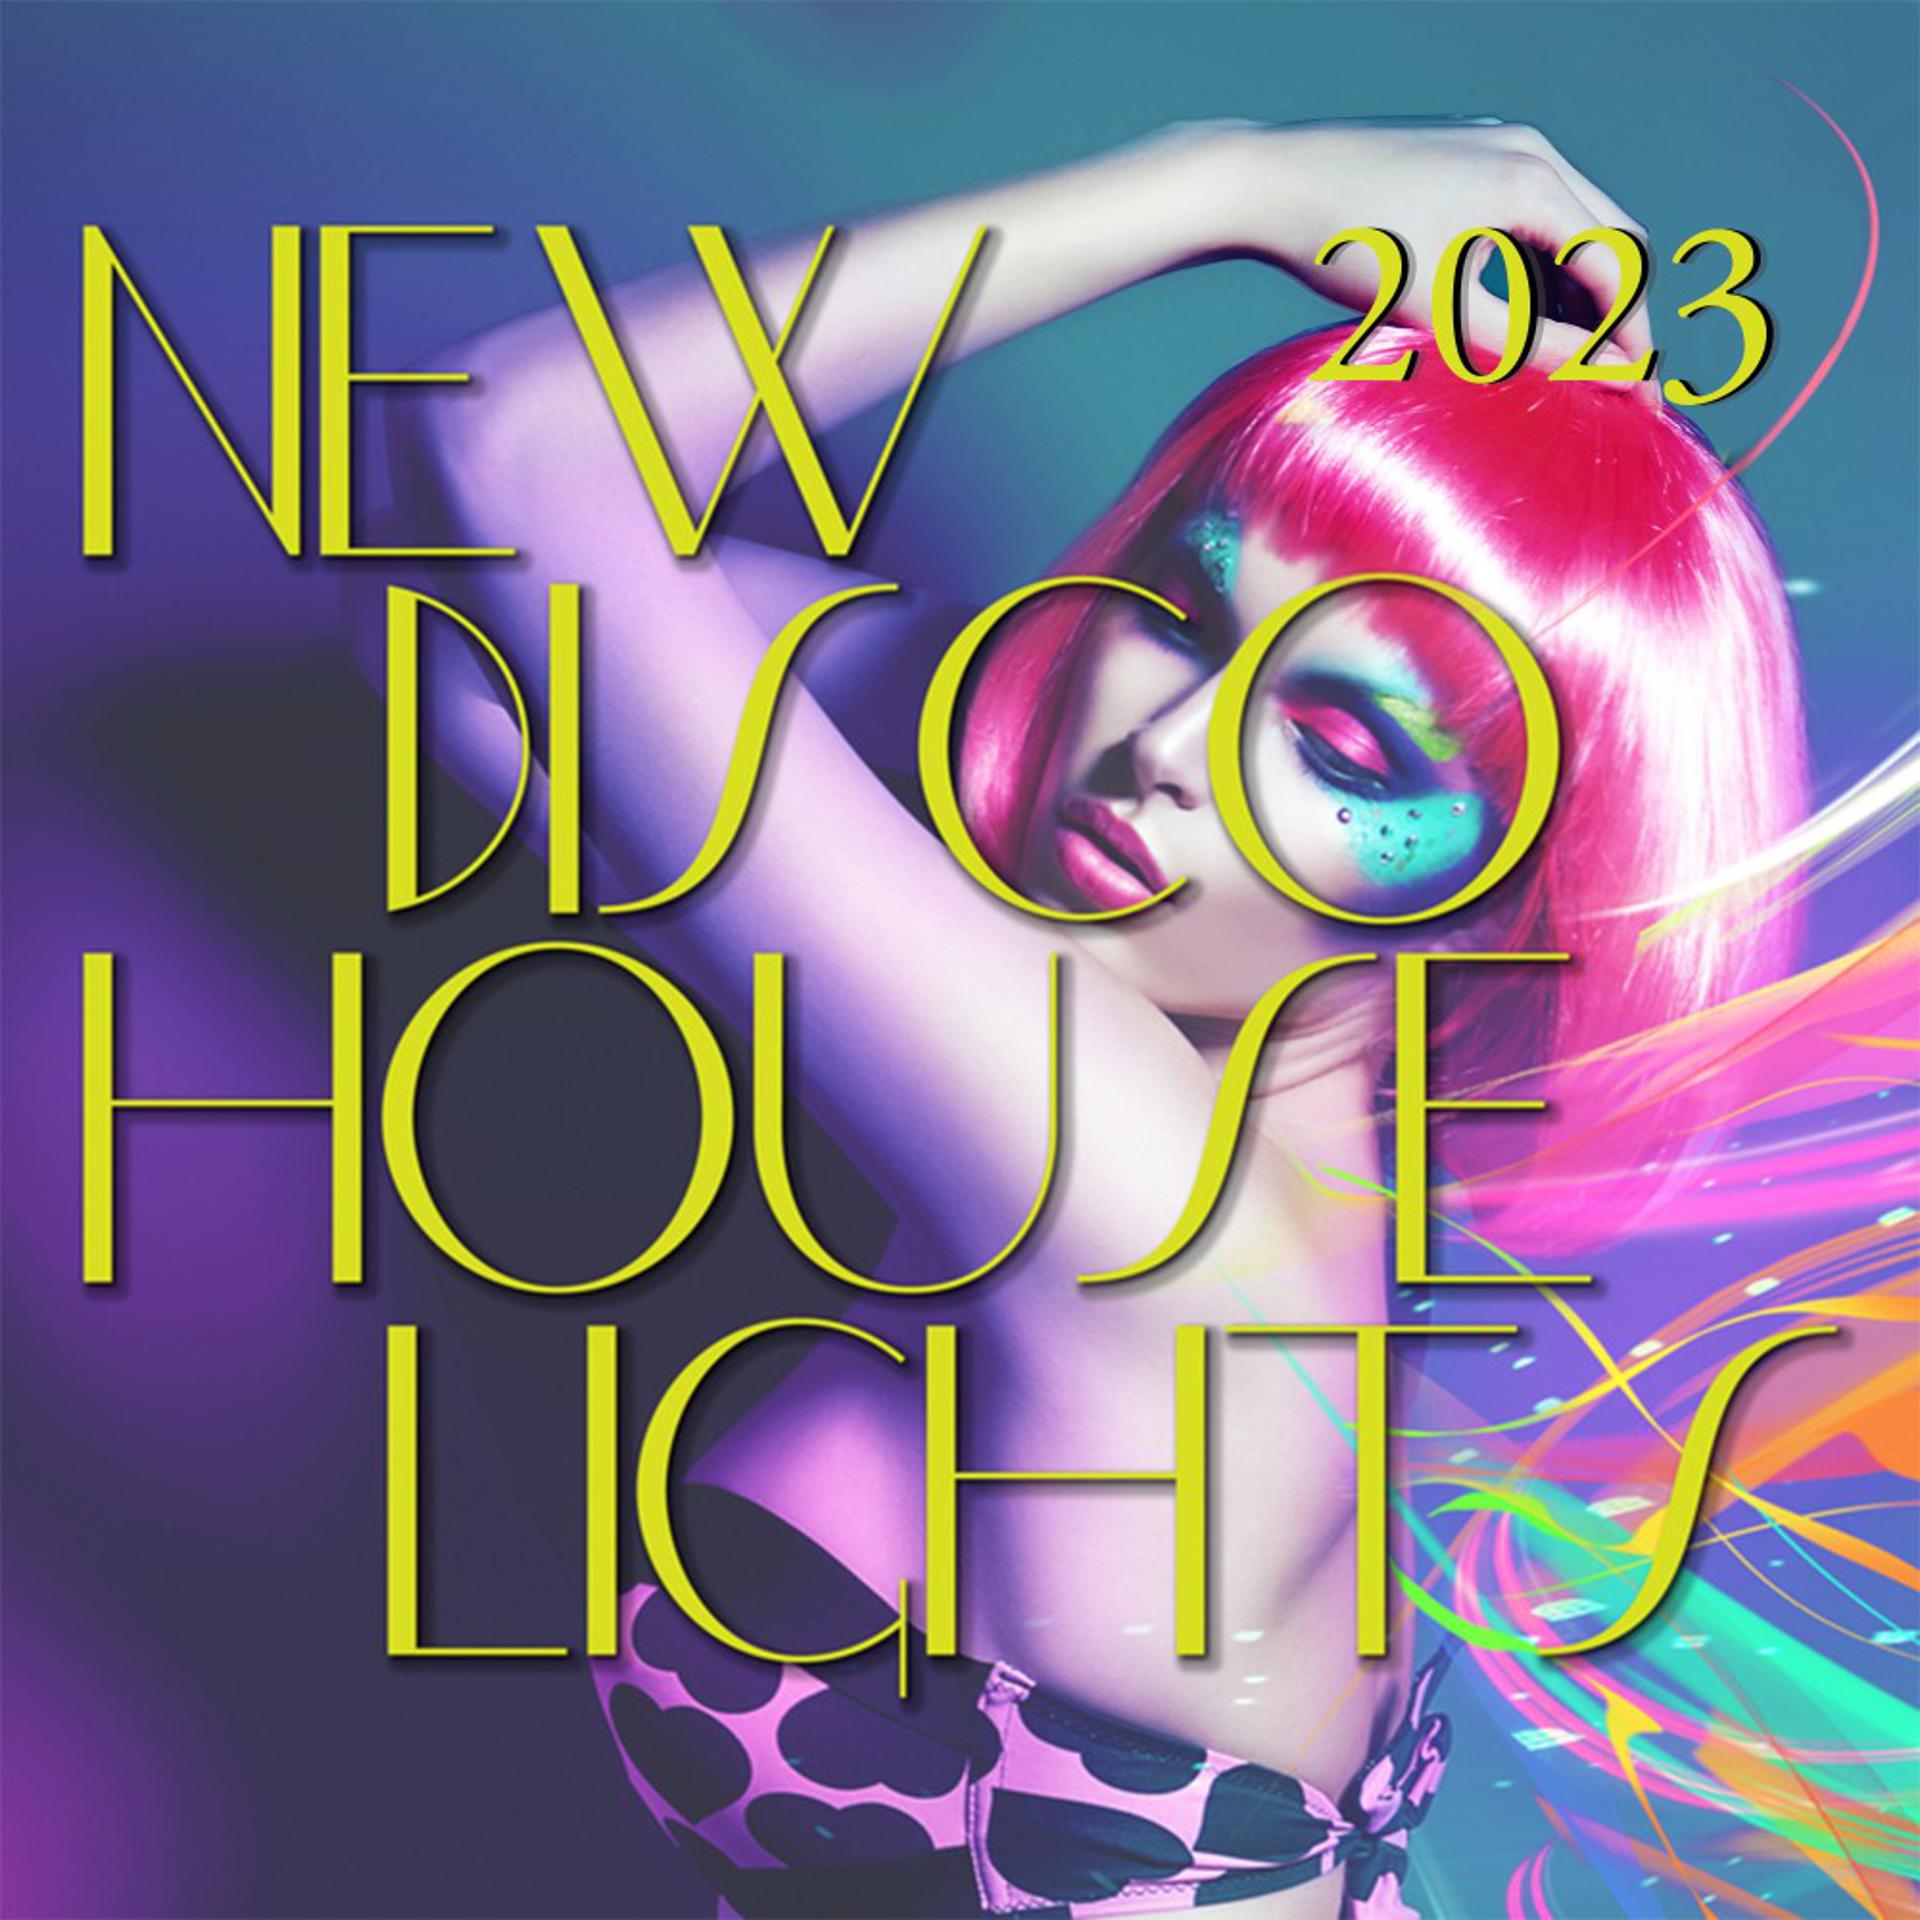 Mp3 new disco. Нью диско. Disco House 2003. Годы диско 1991 Мистер Риз. Jessica Jay all Stars Disco. Volume 01.